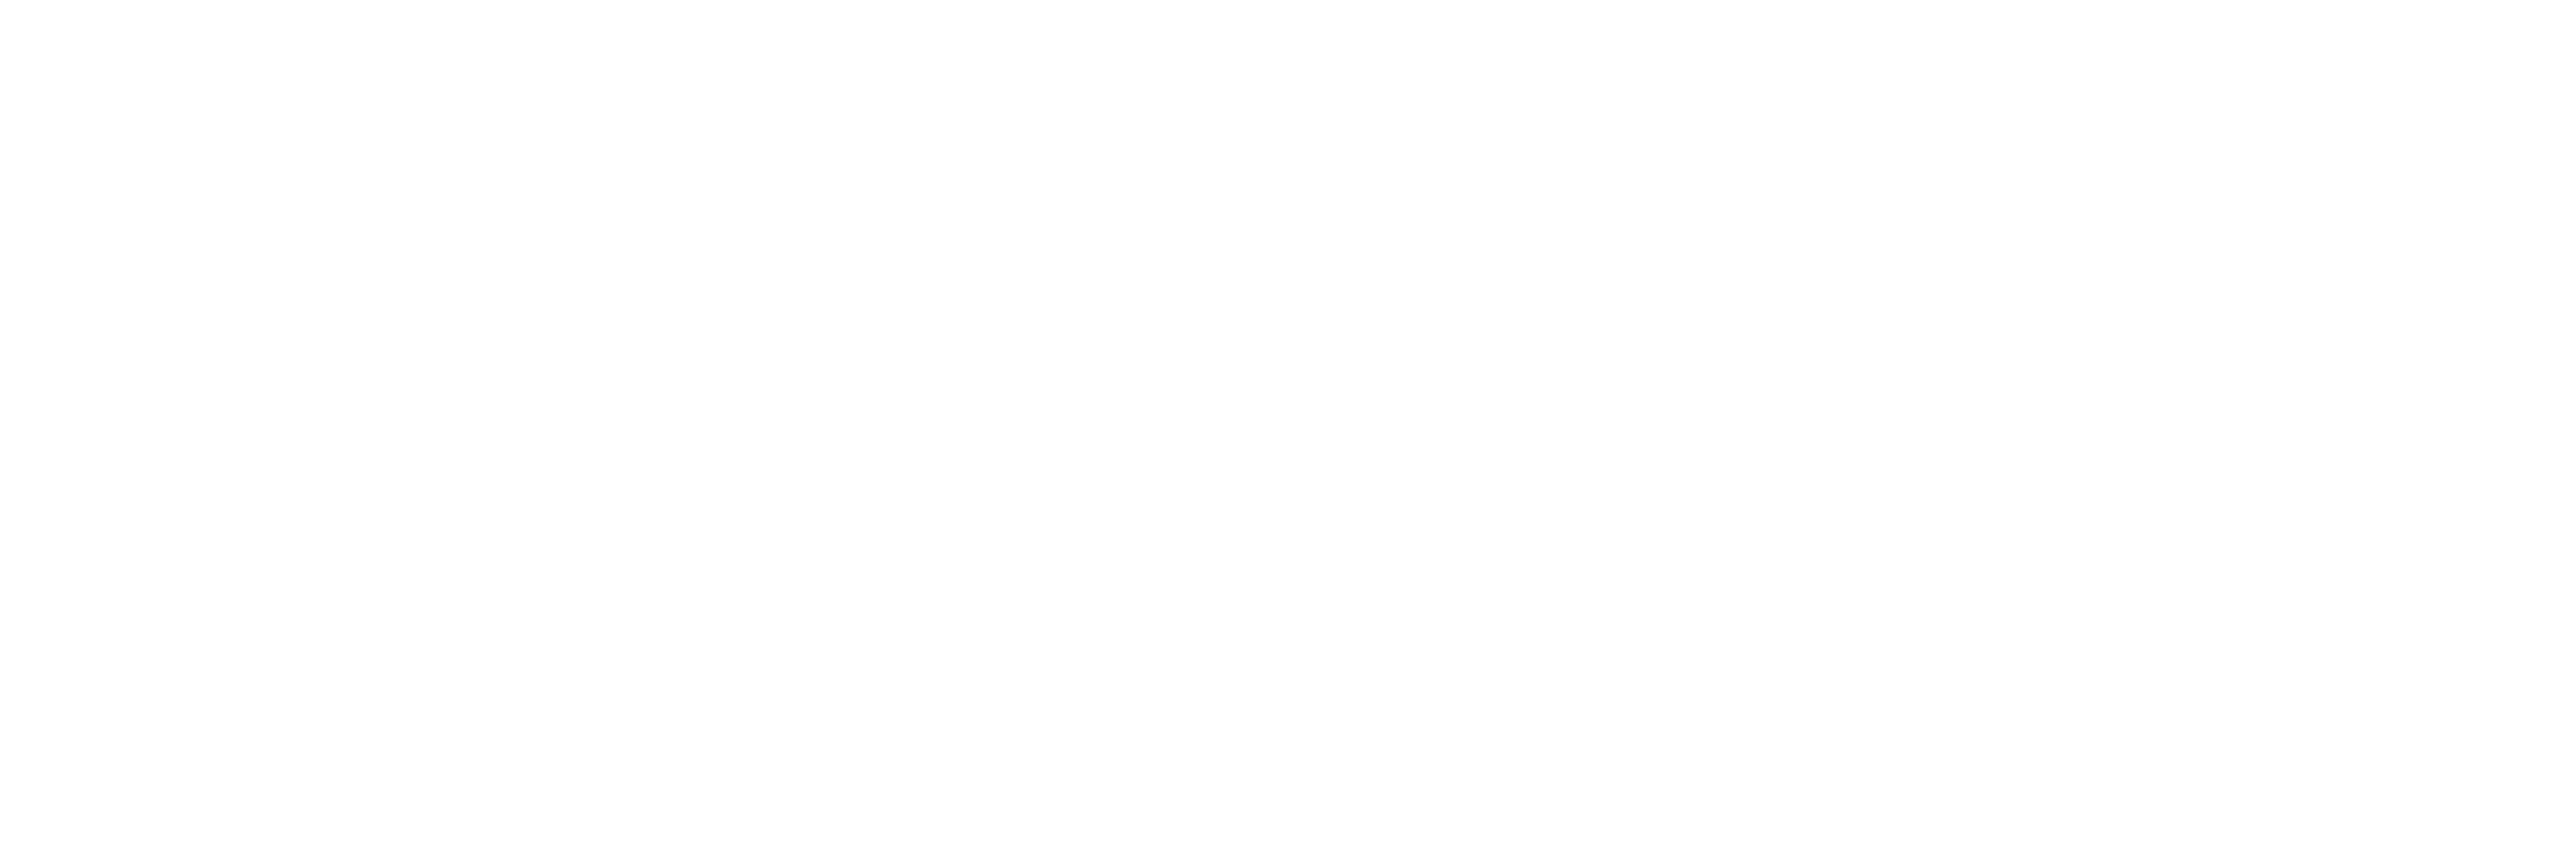 Ingo Bollhoefer Photography